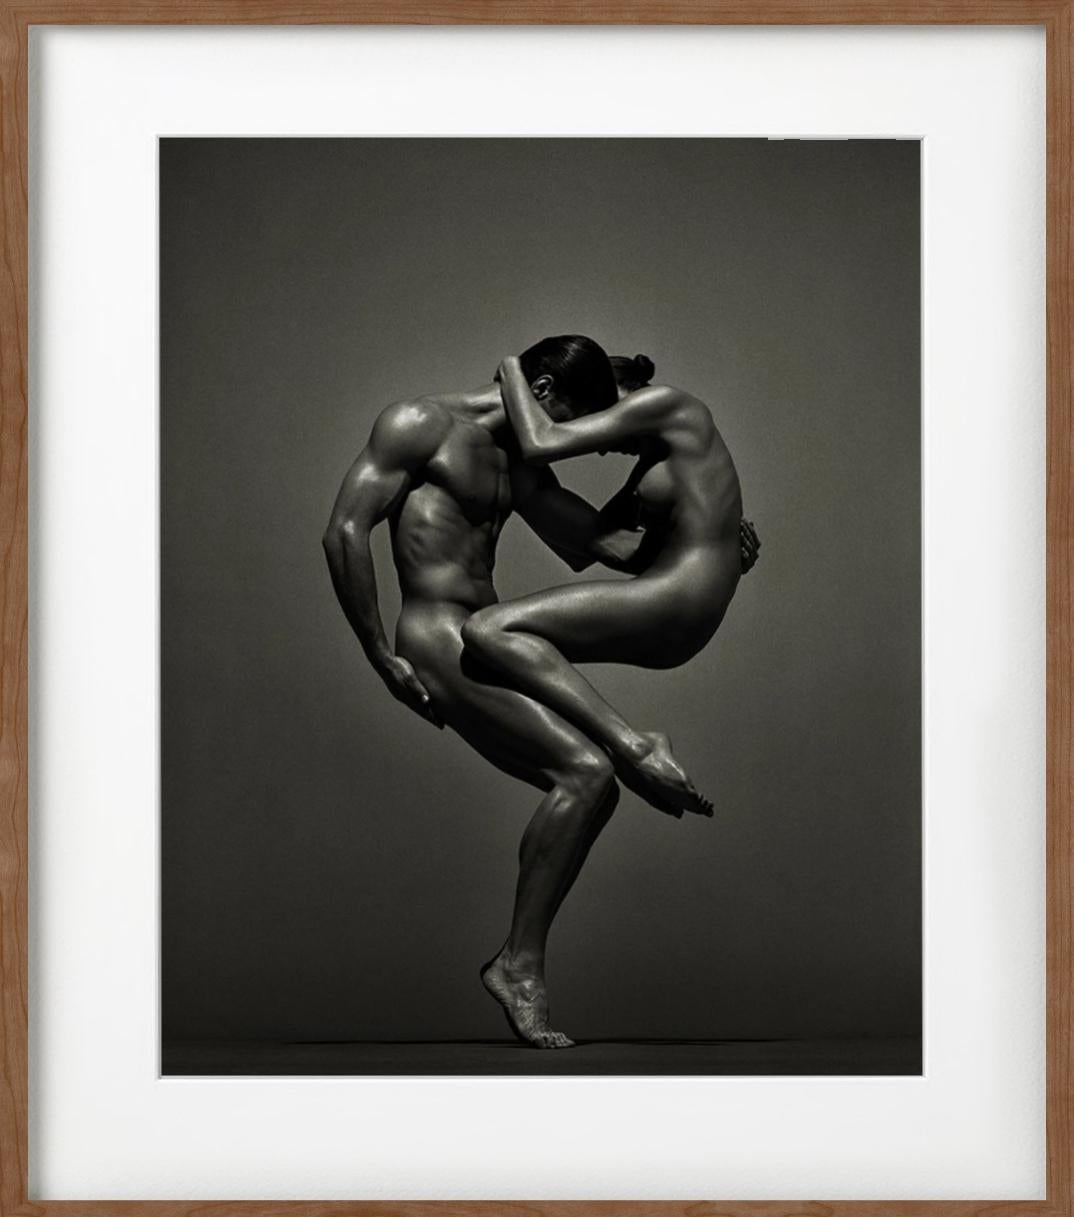 Sina&Anthony, Vienne - deux nus dans une pose athlétique, photographie d'art, 1995 - Contemporain Photograph par Andreas H. Bitesnich